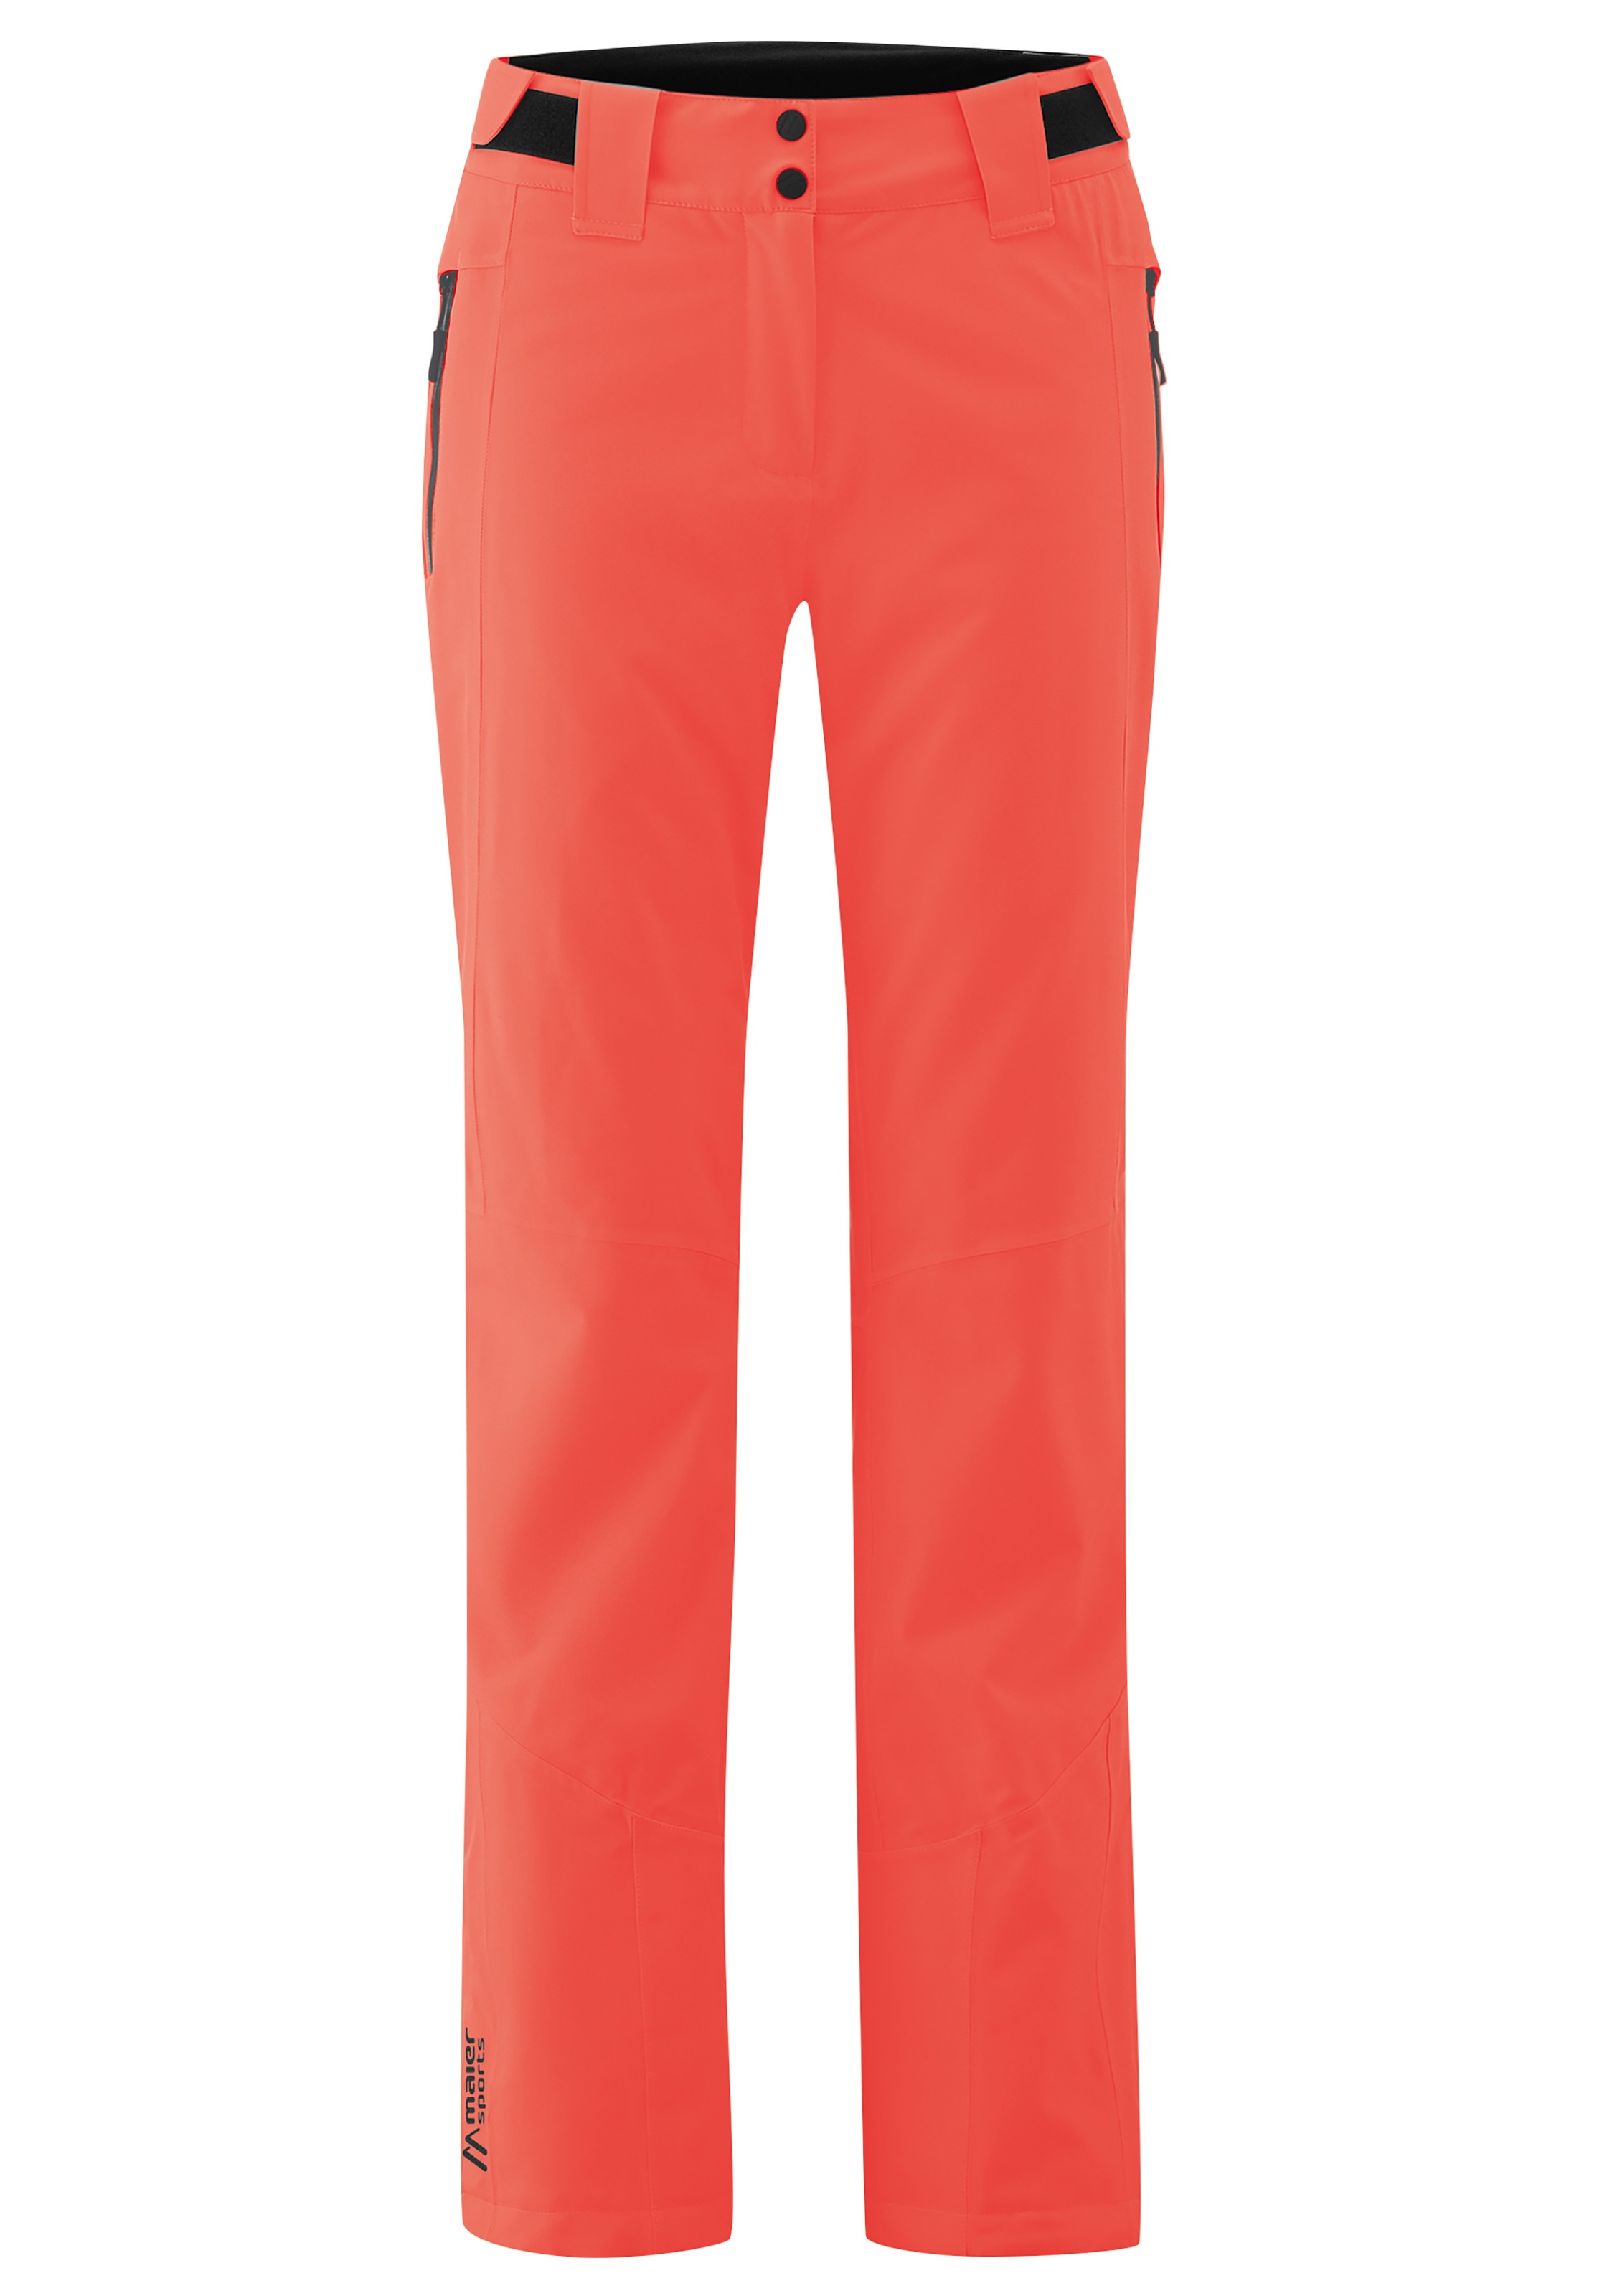 Maier Sports Skihose »Coral Pants«, Silhouette BAUR in | Feminin, schlanker Skihose für sportliche bestellen